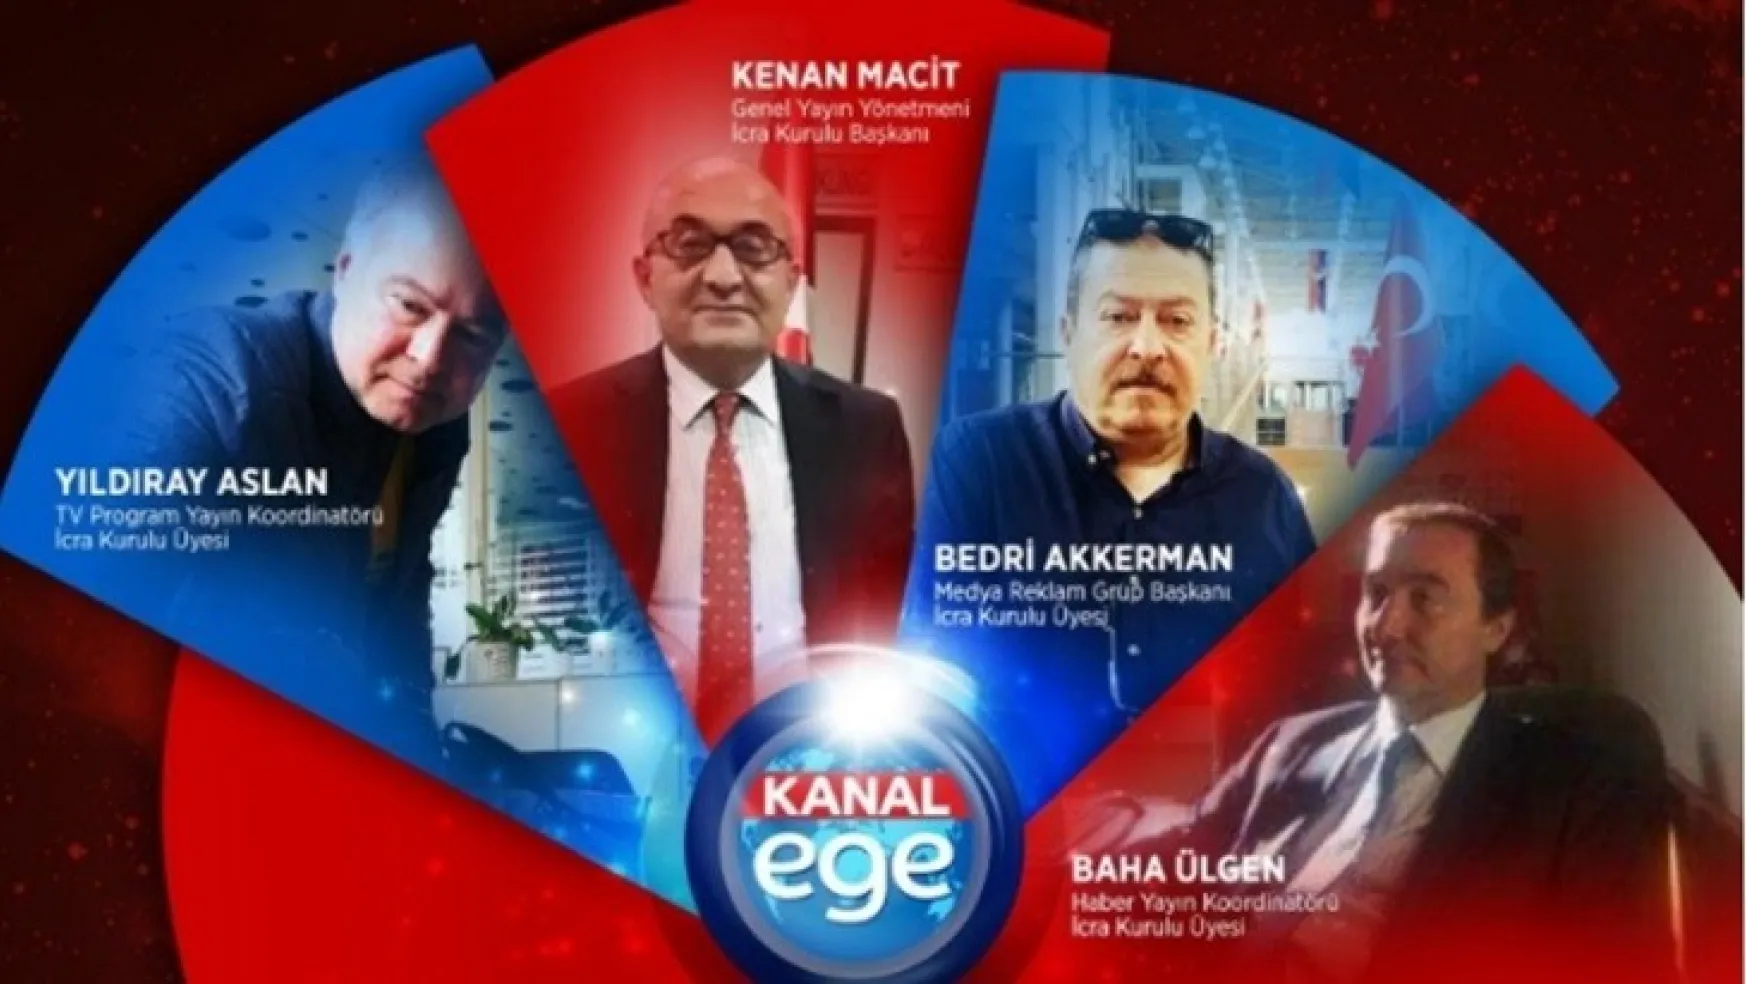 Kanal Ege TV Haber Kanalında Üst Yönetim Belli Oldu